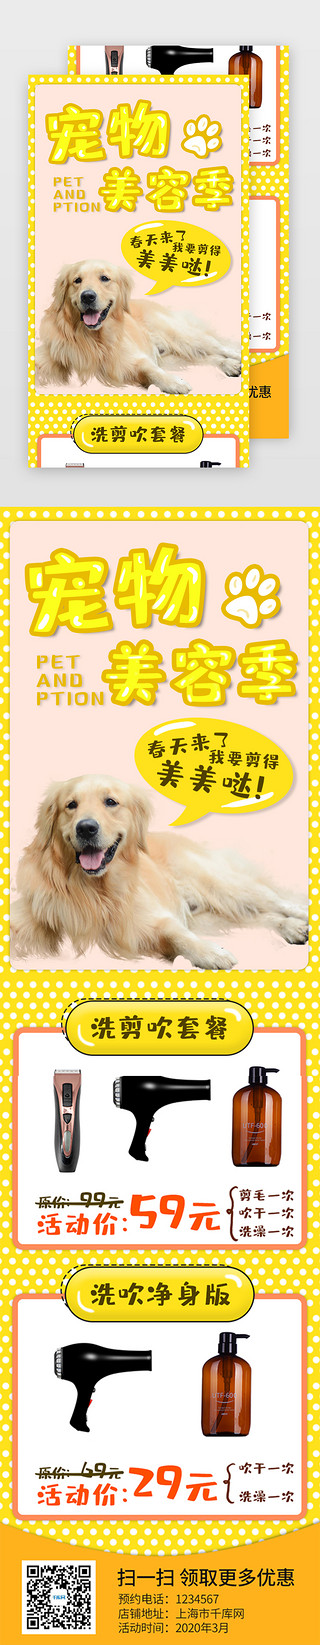 黄色活动海报UI设计素材_黄色宠物护理美容活动H5